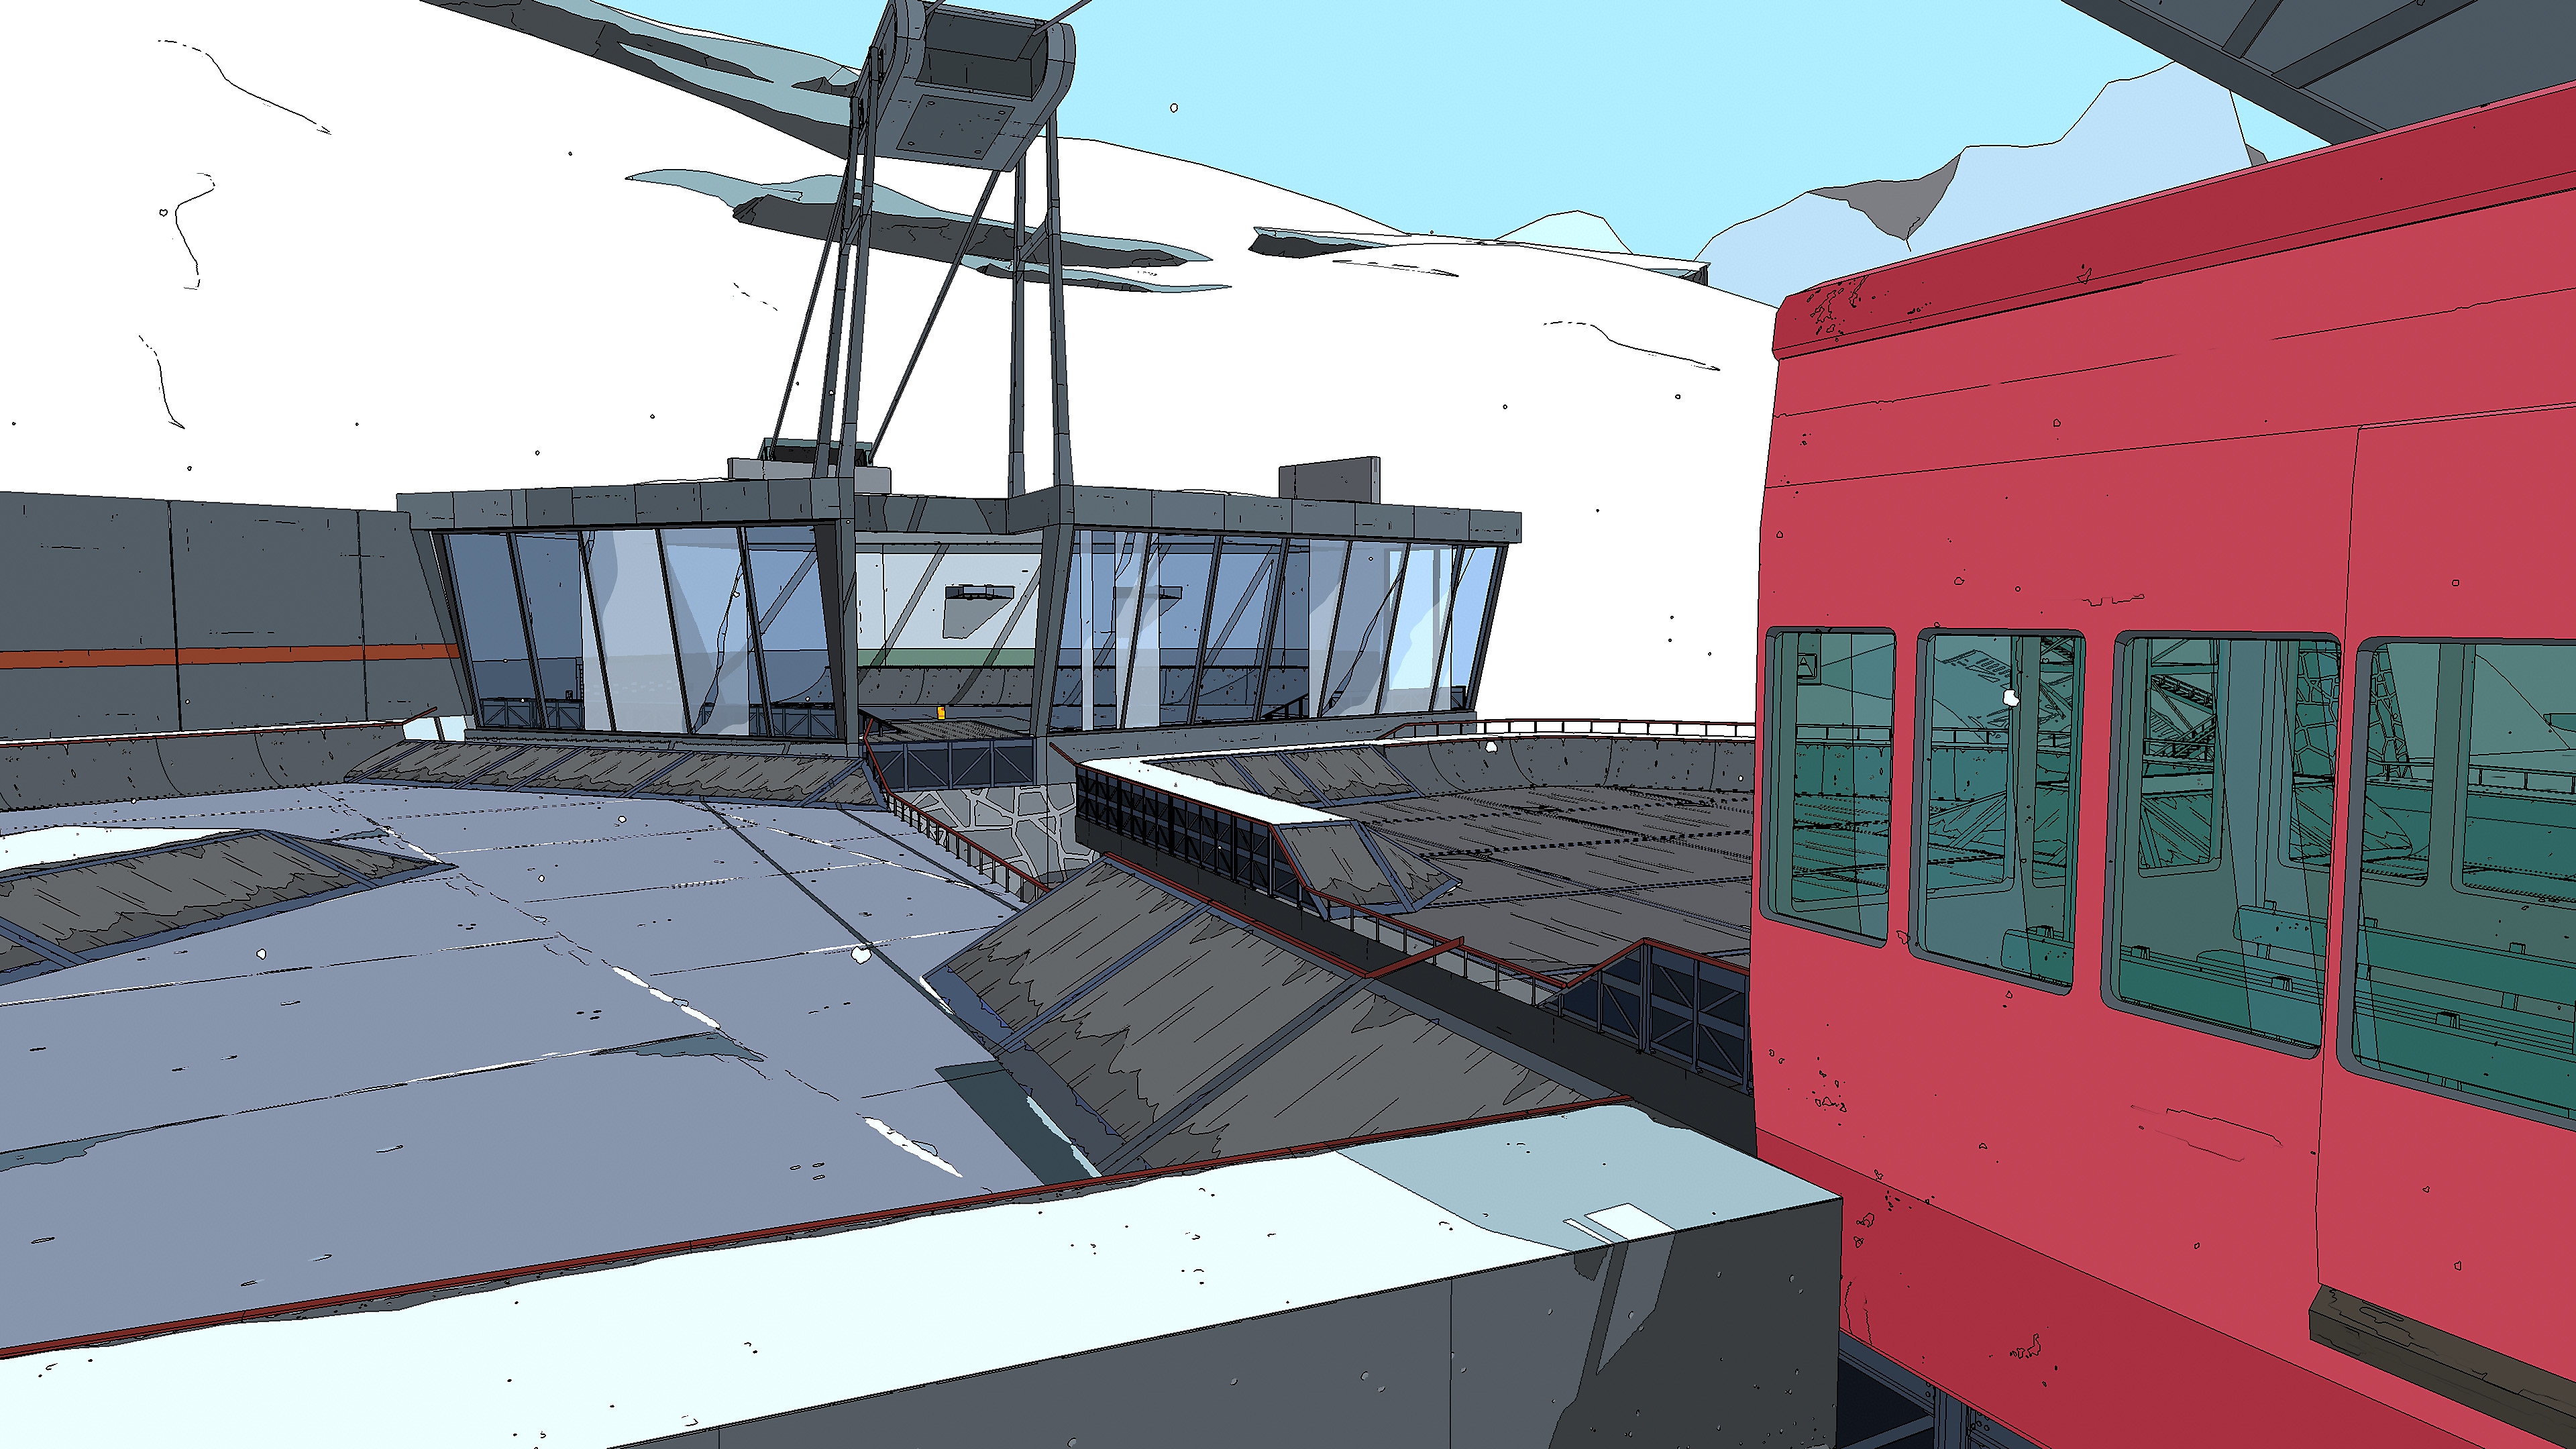 لقطة شاشة للعبة Rollerdrome تعرض ساحة قتال